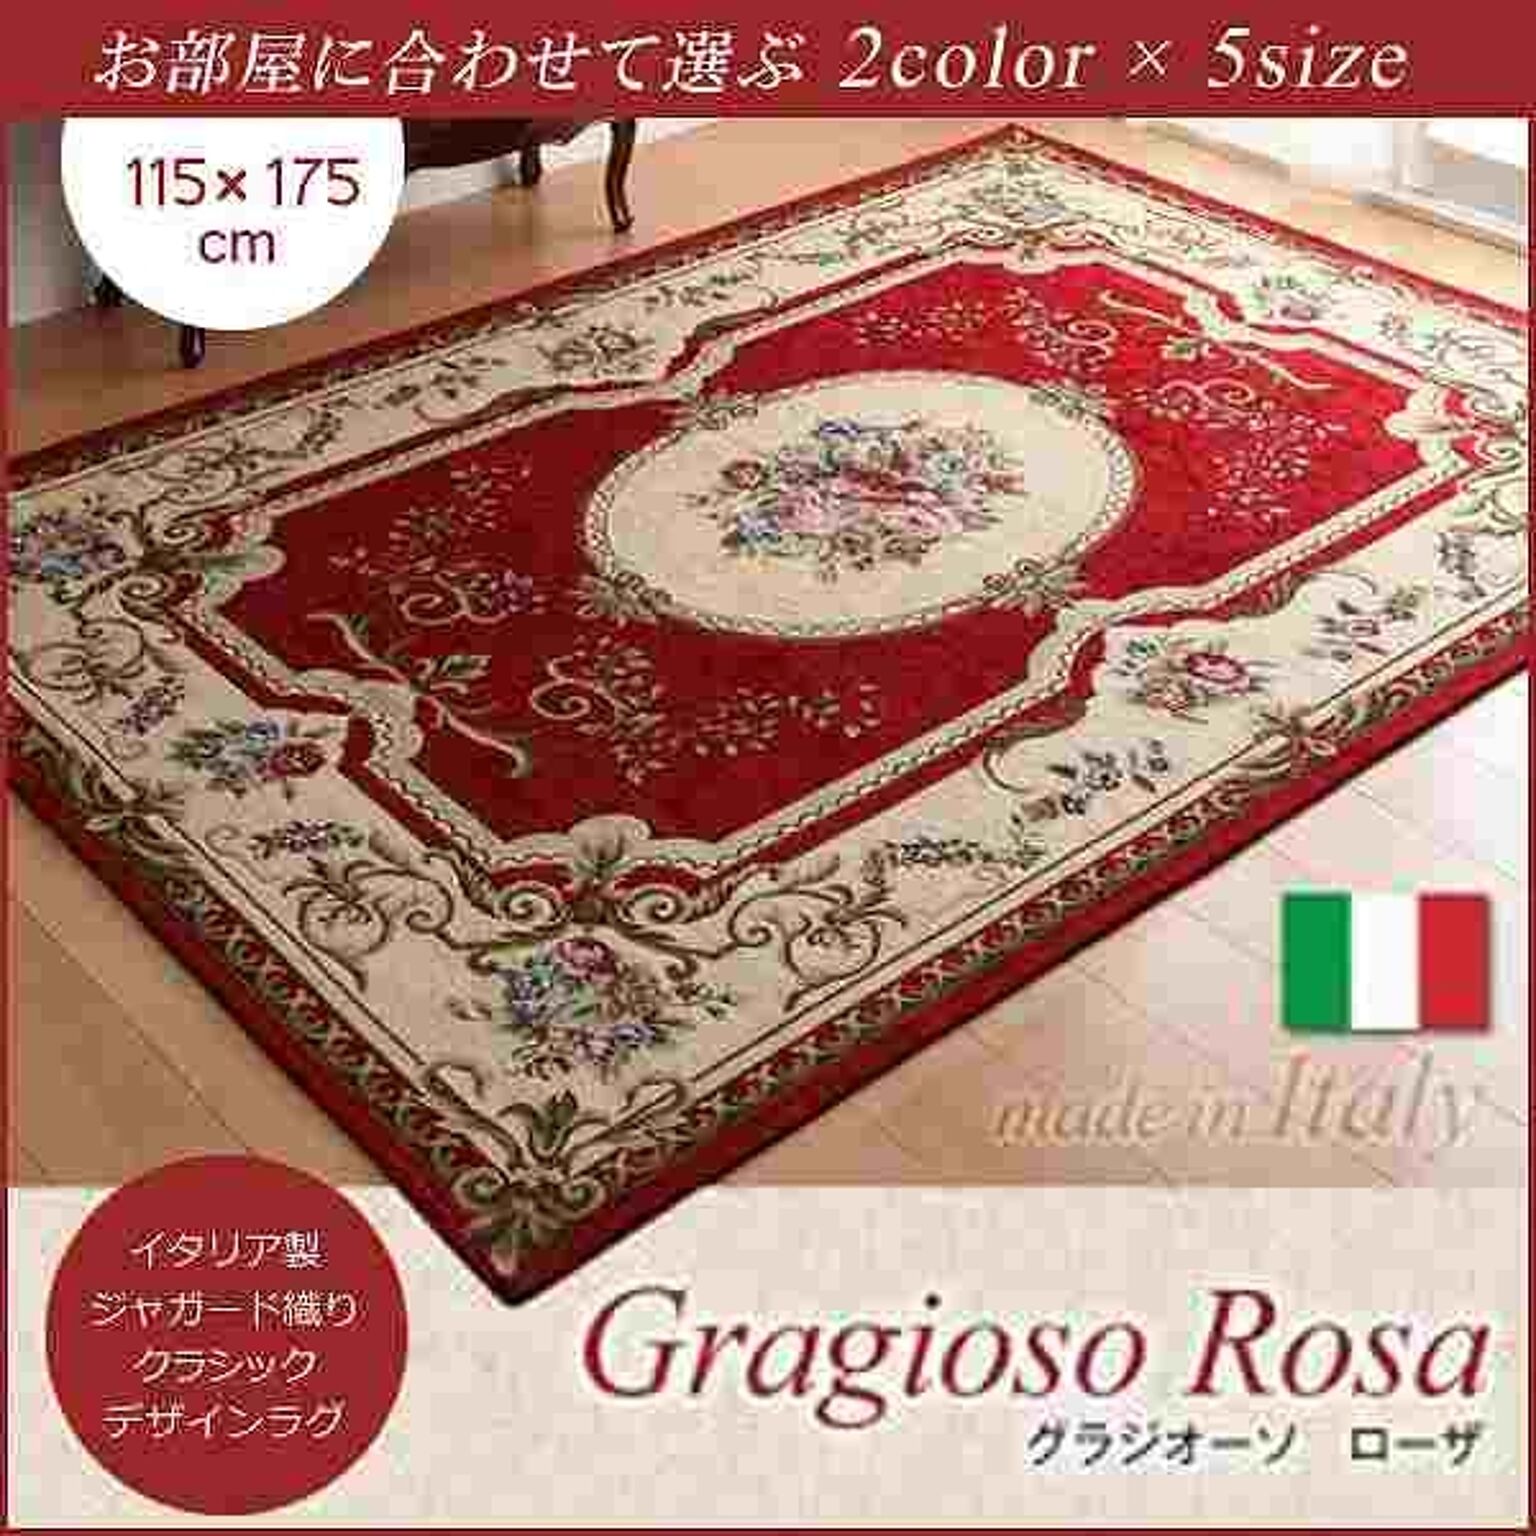 イタリア製ジャガード織りクラシックデザインラグ【Gragioso★Rosa】グラジオーソ★ローザ★115×175cm★レッド